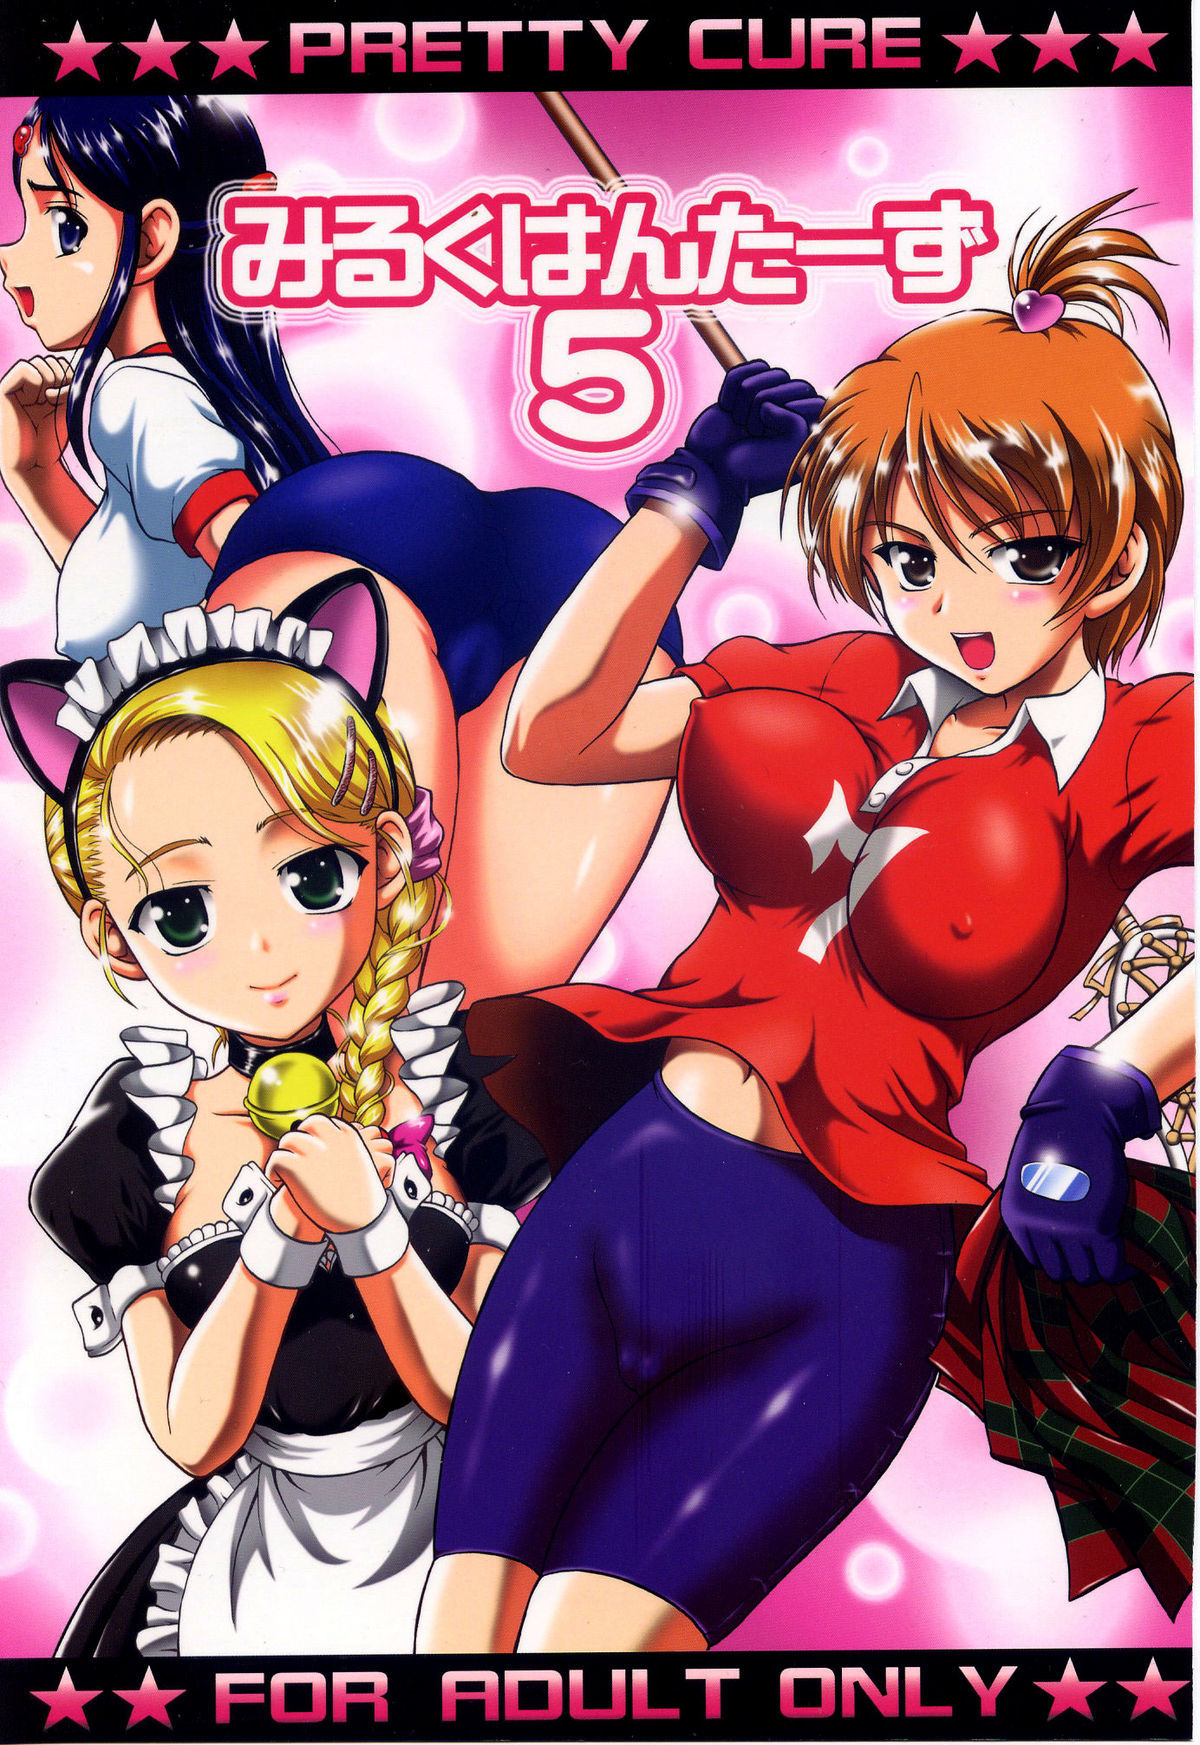 Milk Hunters 5 futari wa pretty cure hentai manga